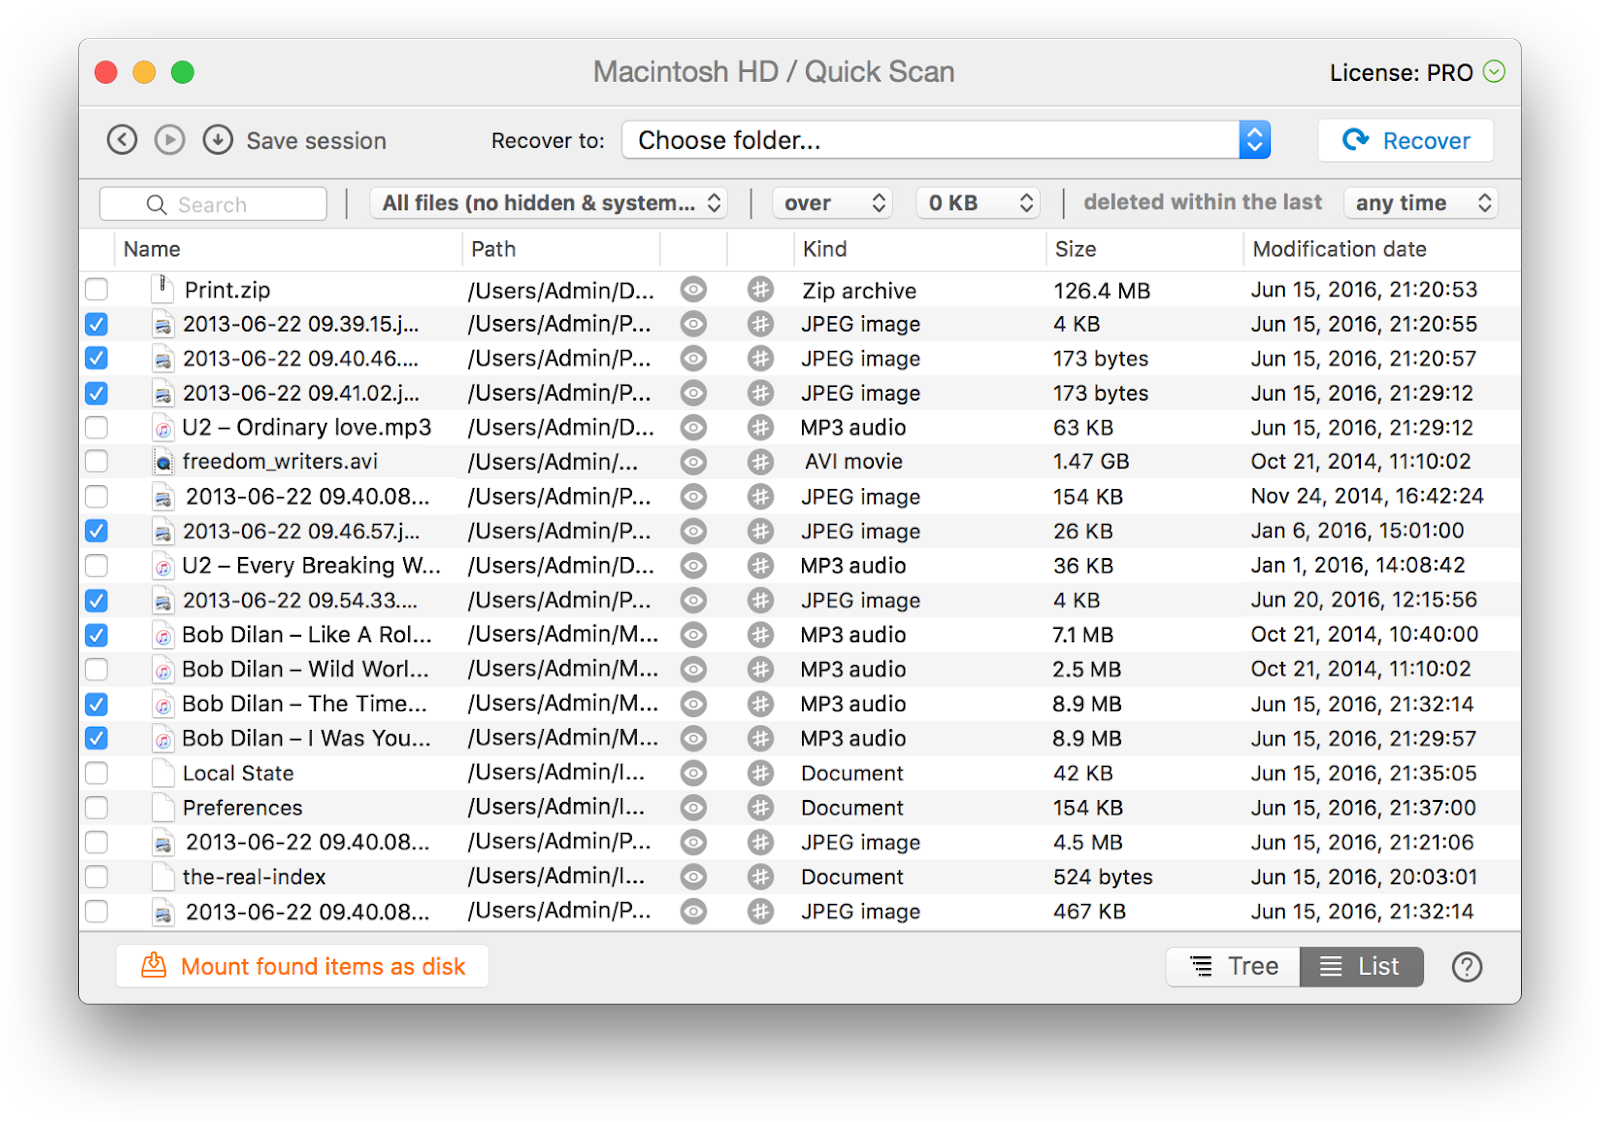 File prepare. Прогррамма для жестких дисков Macos. Как восстановить файл Мак. Doc список. Восстановление файлов Mac os.